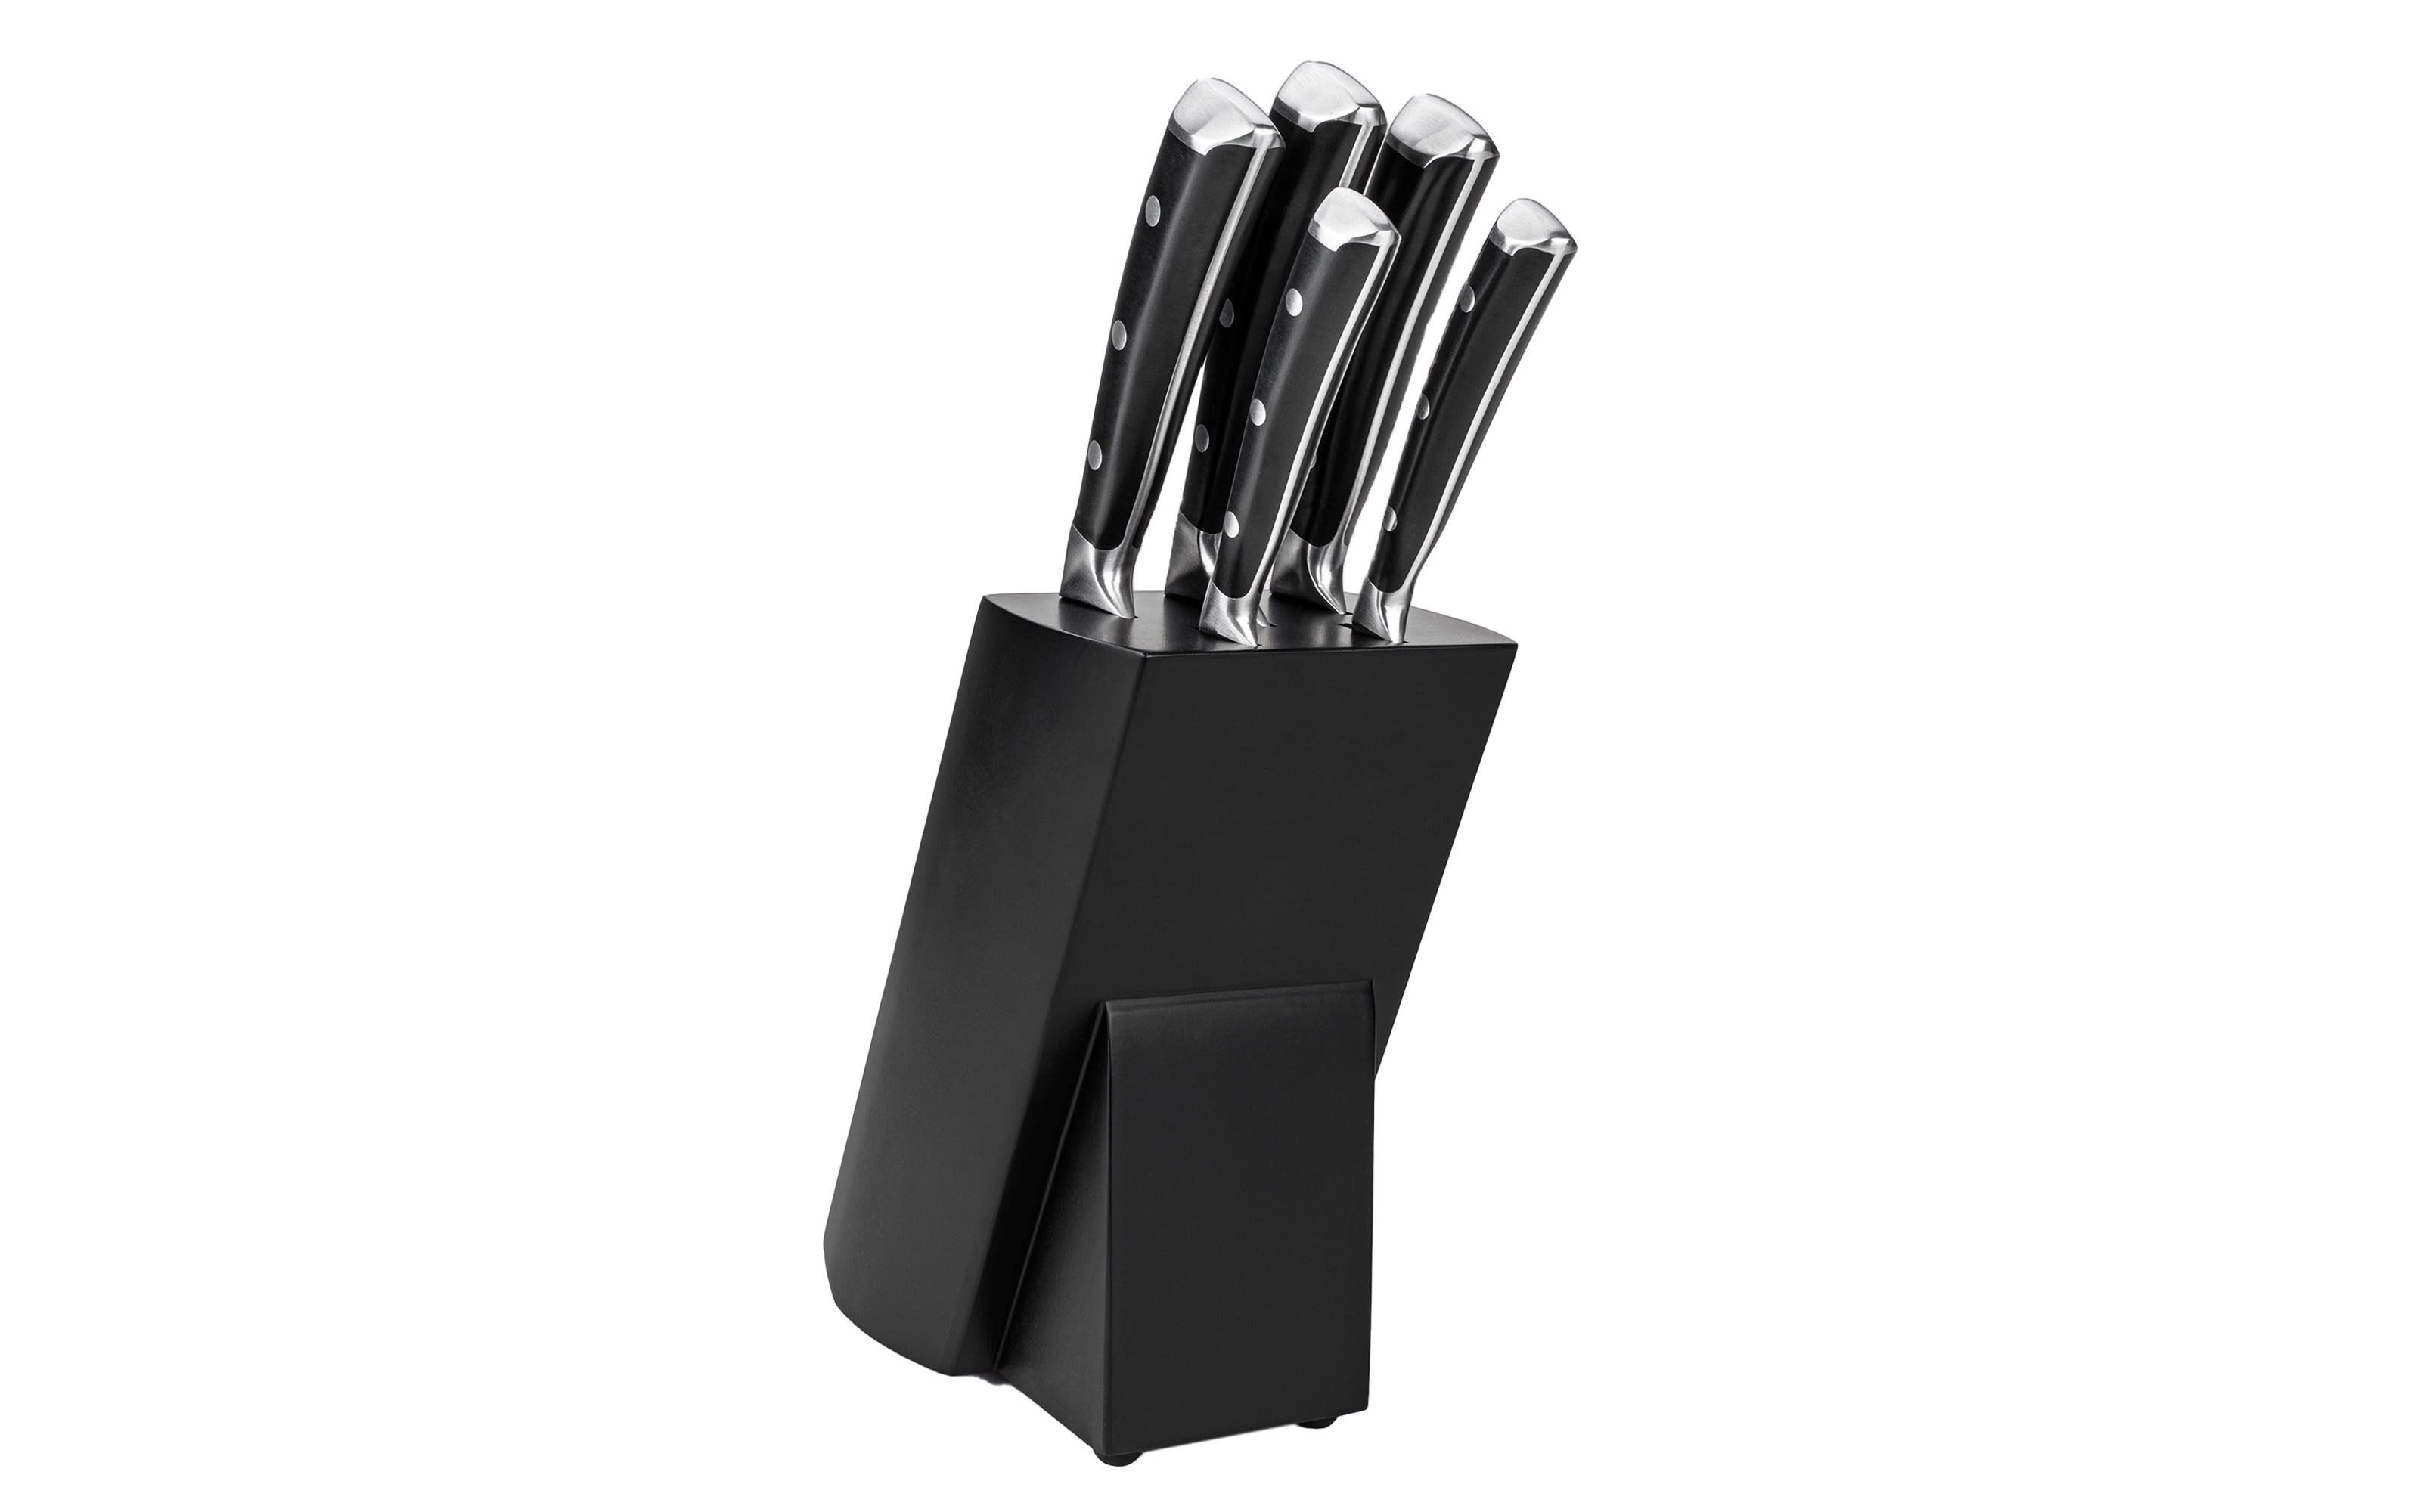 Messerblock Art aus Klingenstahl in schwarz, 6-teilig